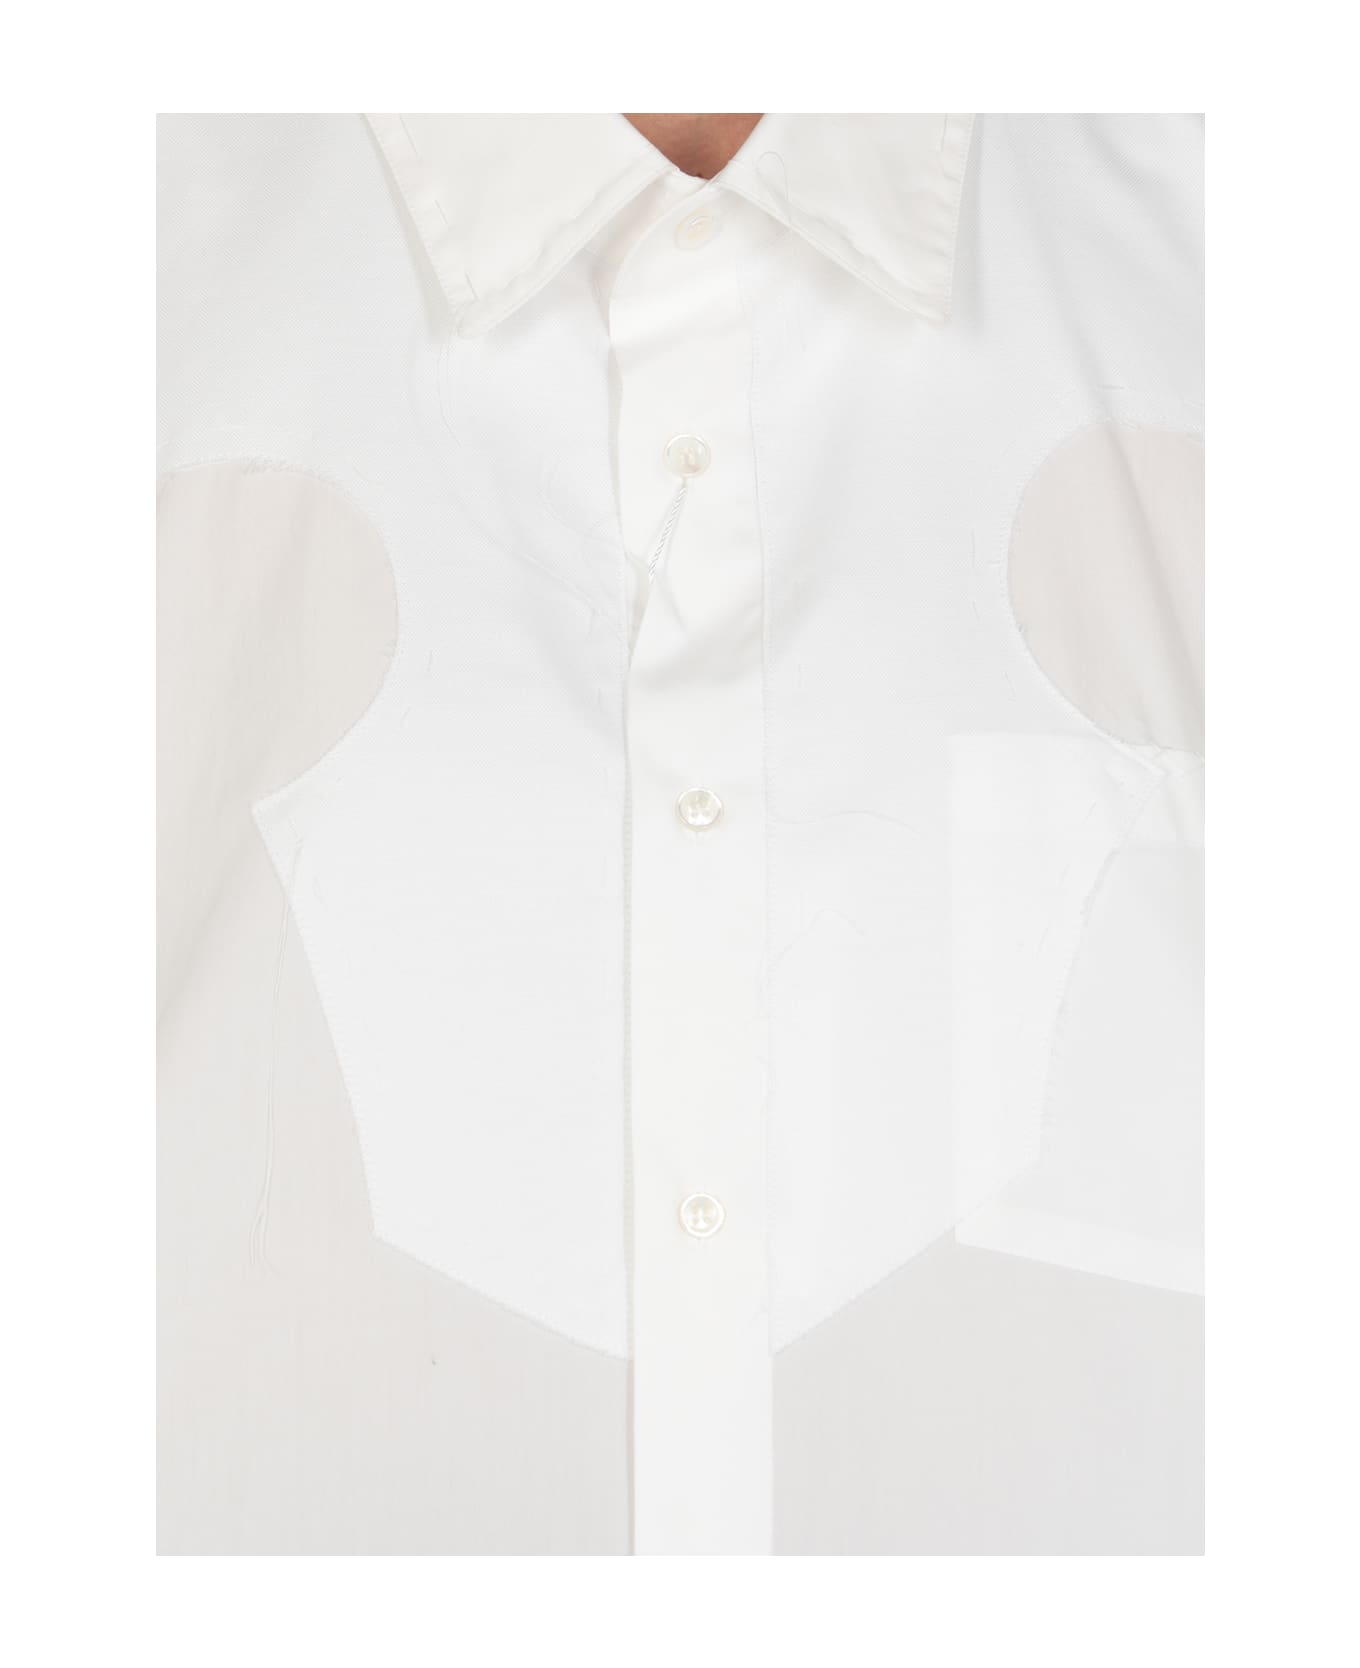 Maison Margiela Button-up Mini Shirt Dress - Optic White シャツ